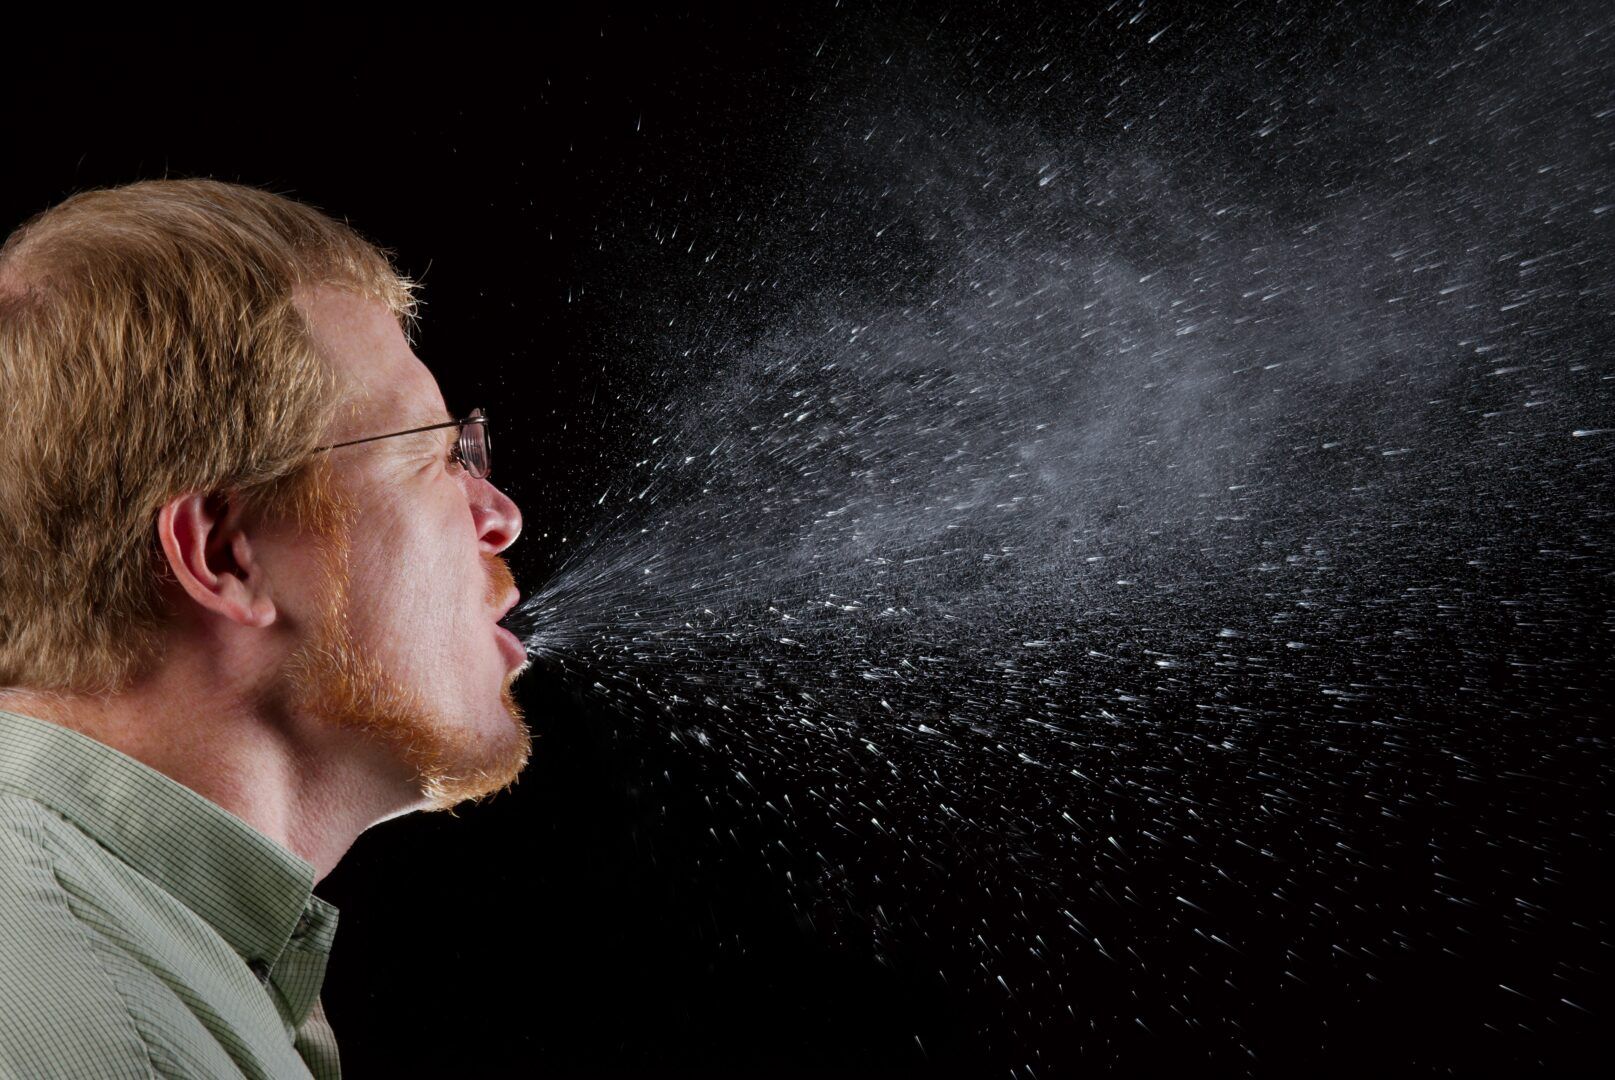 Como parar de espirrar - Dicas imperdíveis para acabar com o espirro